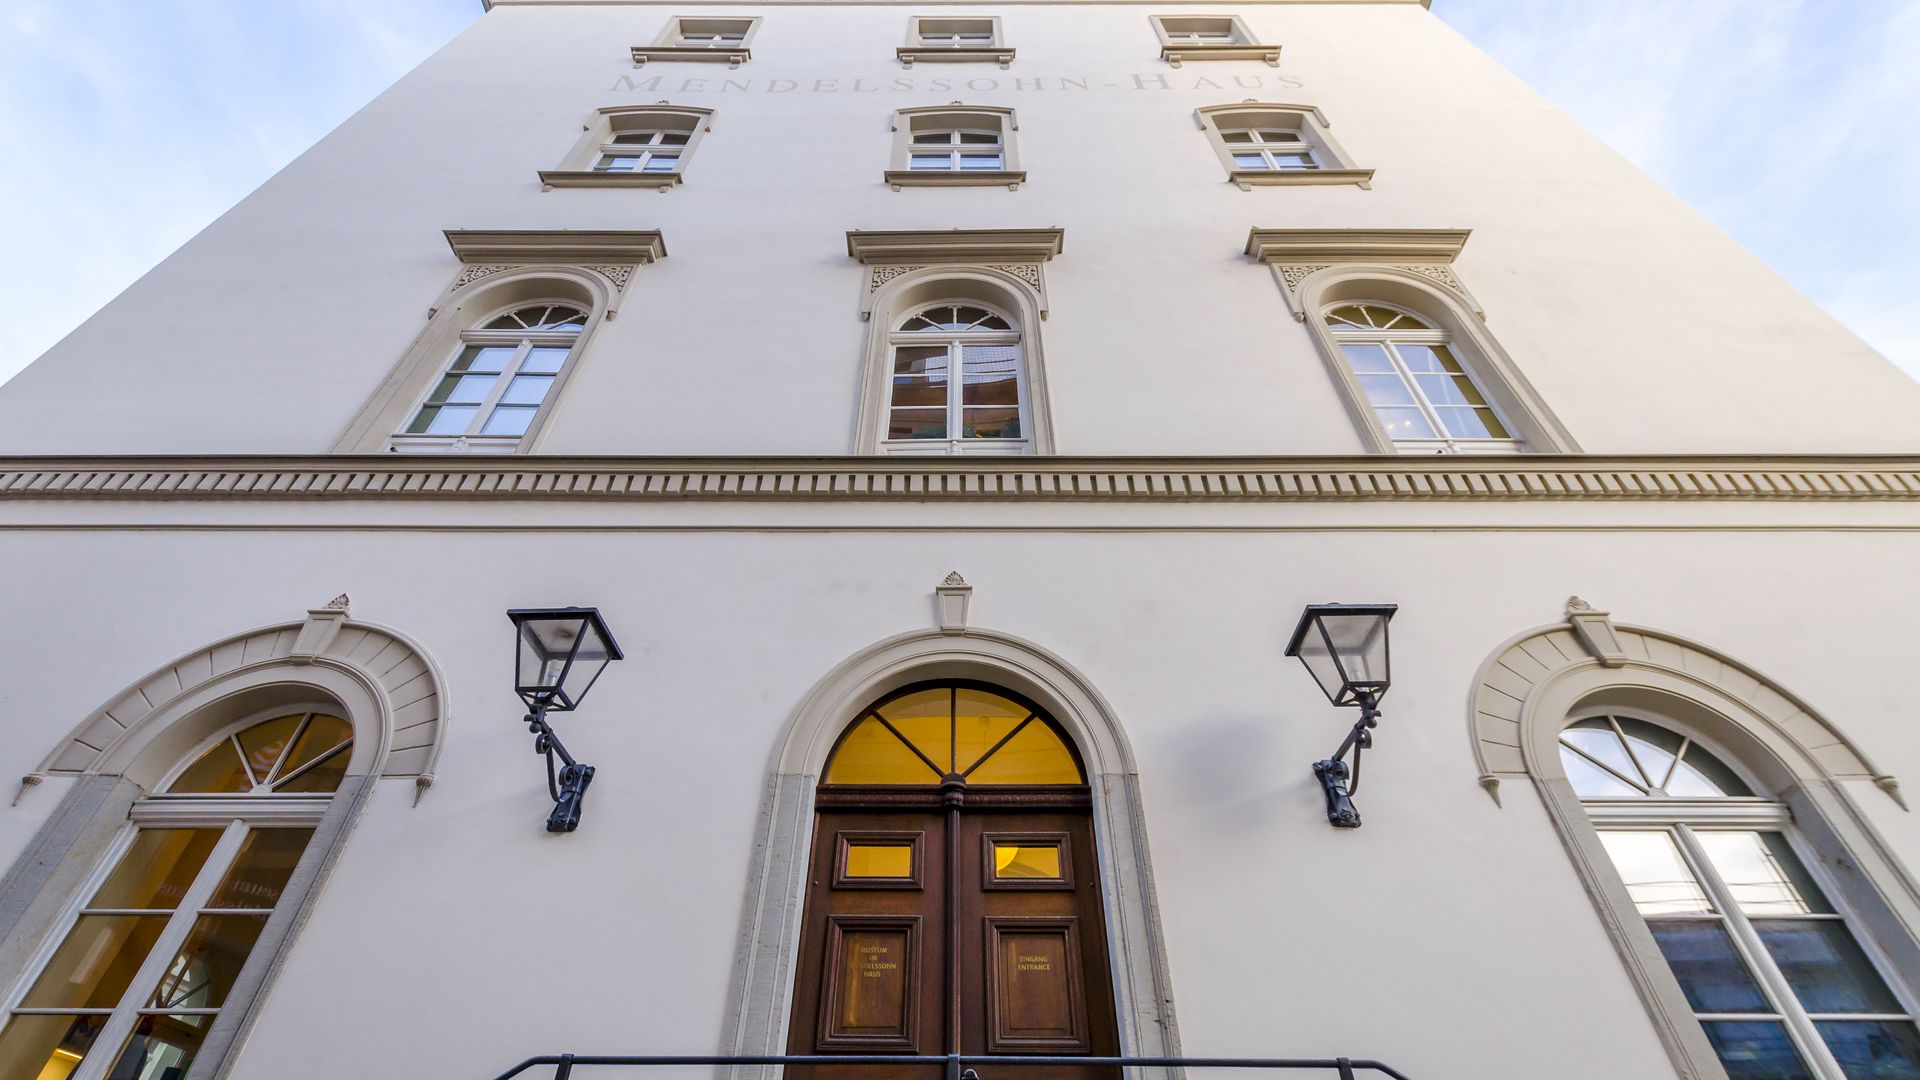 Widok na fasadę domu Mendelssohna, który jest jednym z punktów szlaku Śladami nut (Notenspur) Muzycznego miasta Lipska oraz w którym mieści się muzeum poświęcone życiu i twórczości Feliksa Mendelssohna Bartholdy'ego, instytucja kulturalna, atrakcje turystyczne